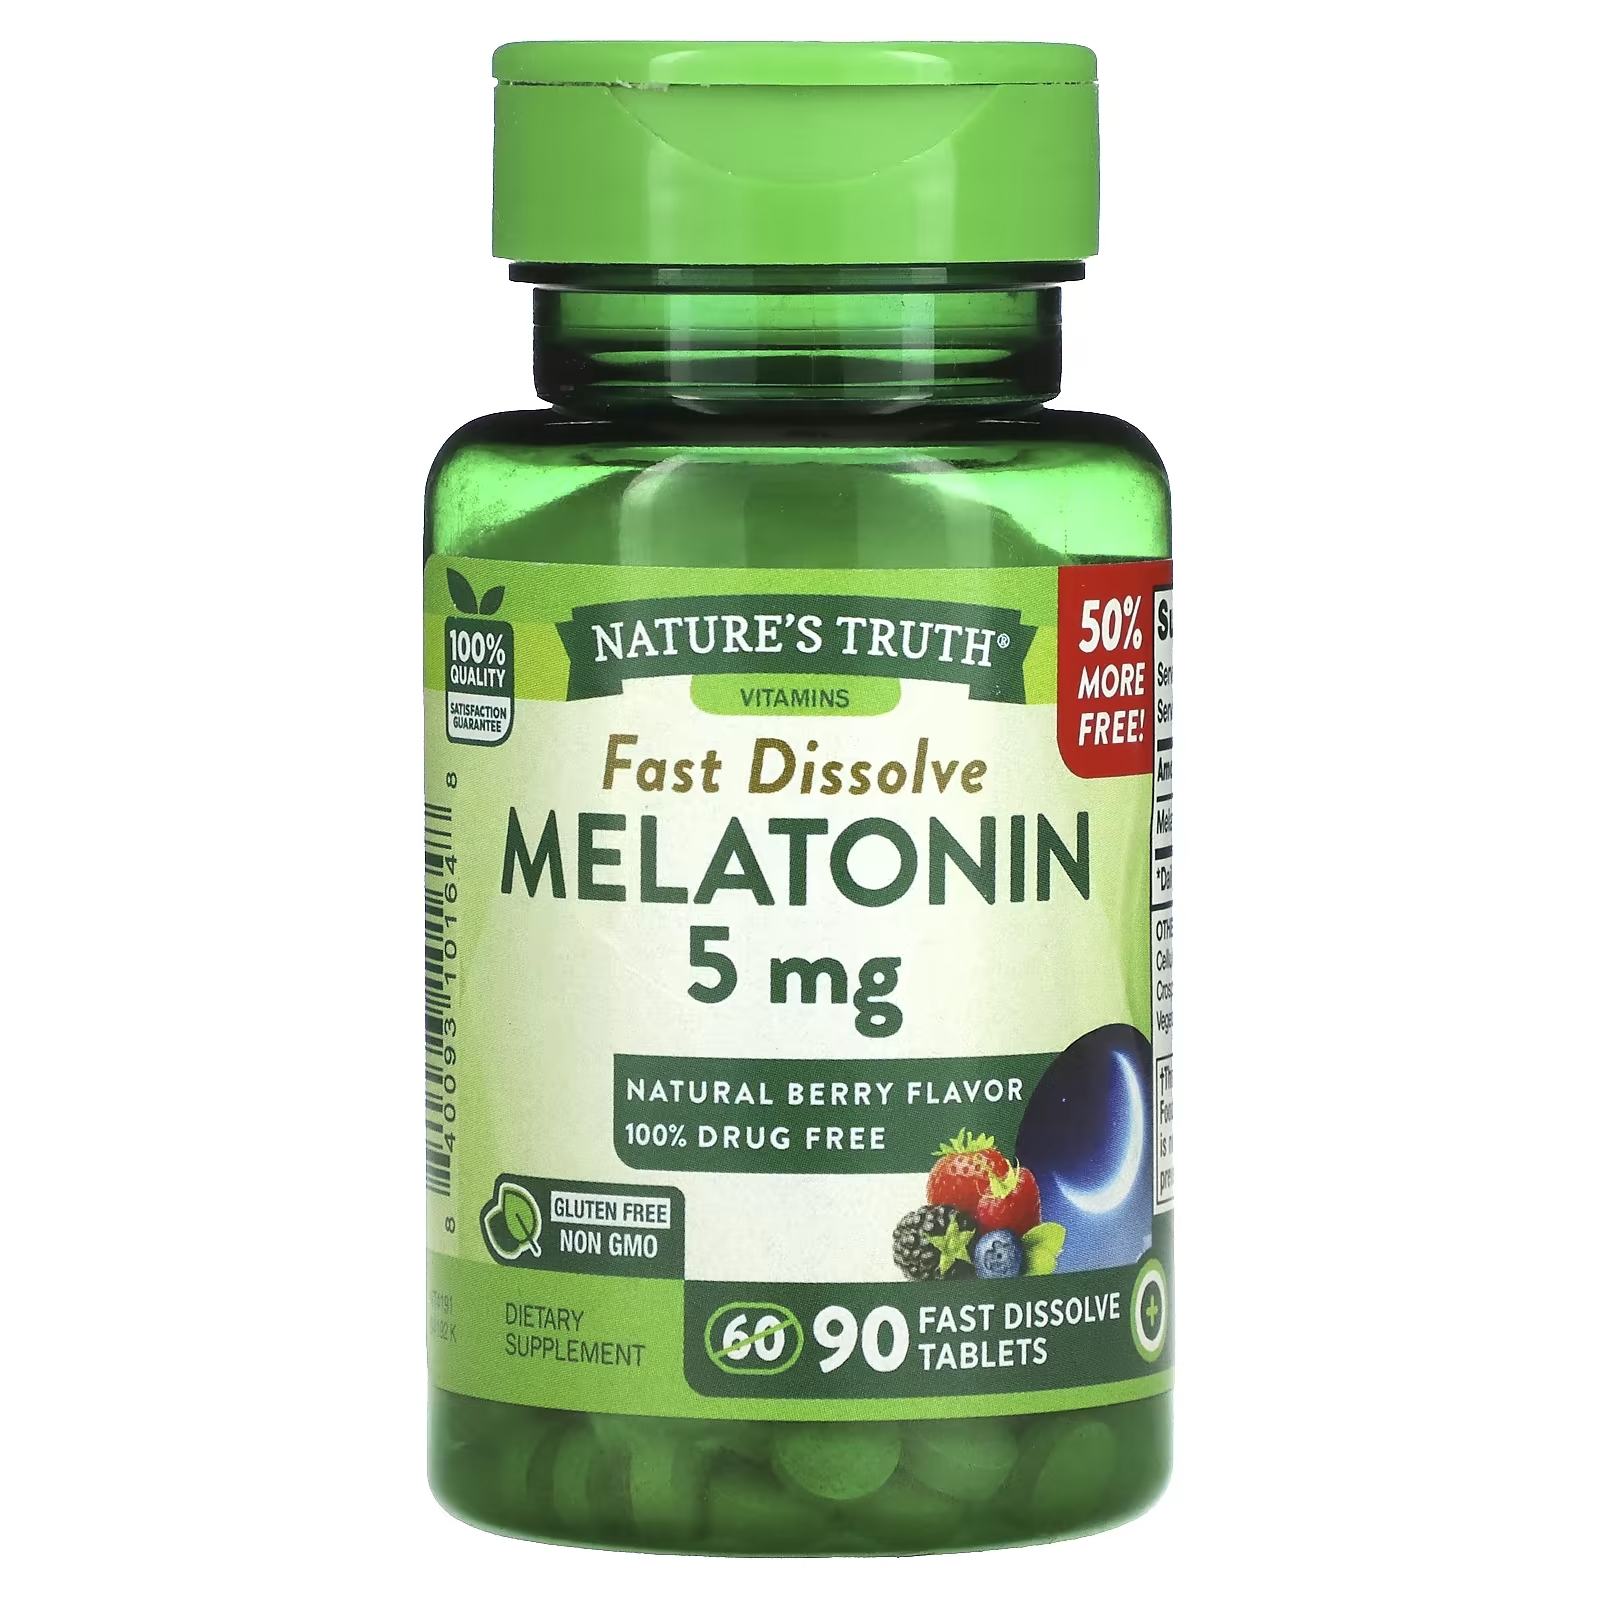 Nature's Truth Мелатонин Натуральные ягоды 5 мг, 90 быстро растворяющихся таблеток